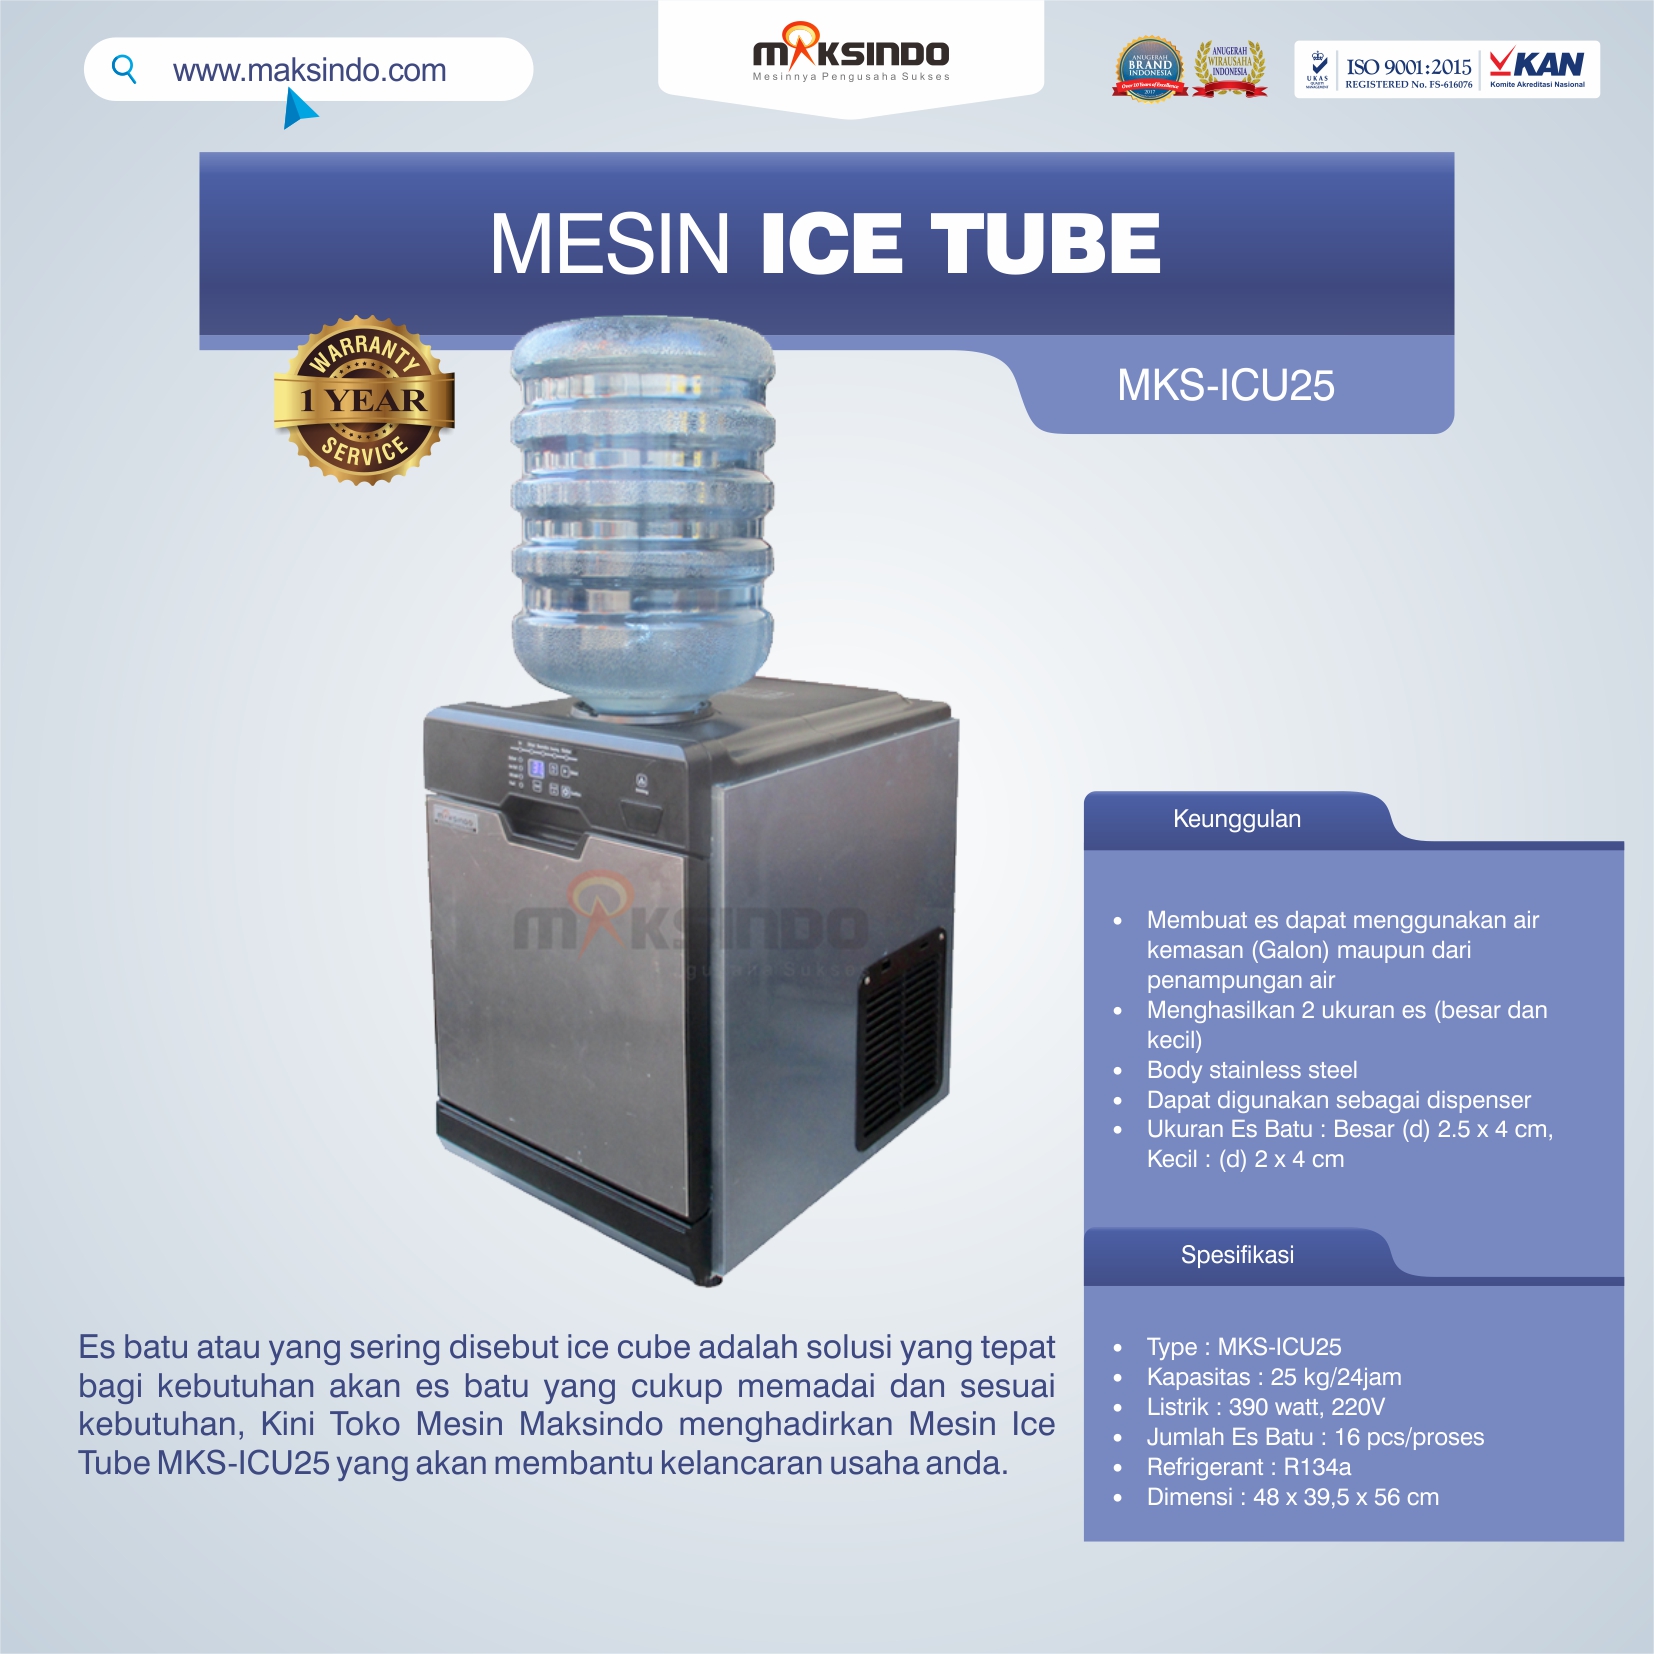 Jual Mesin Ice Tube MKS-ICU25 di Malang